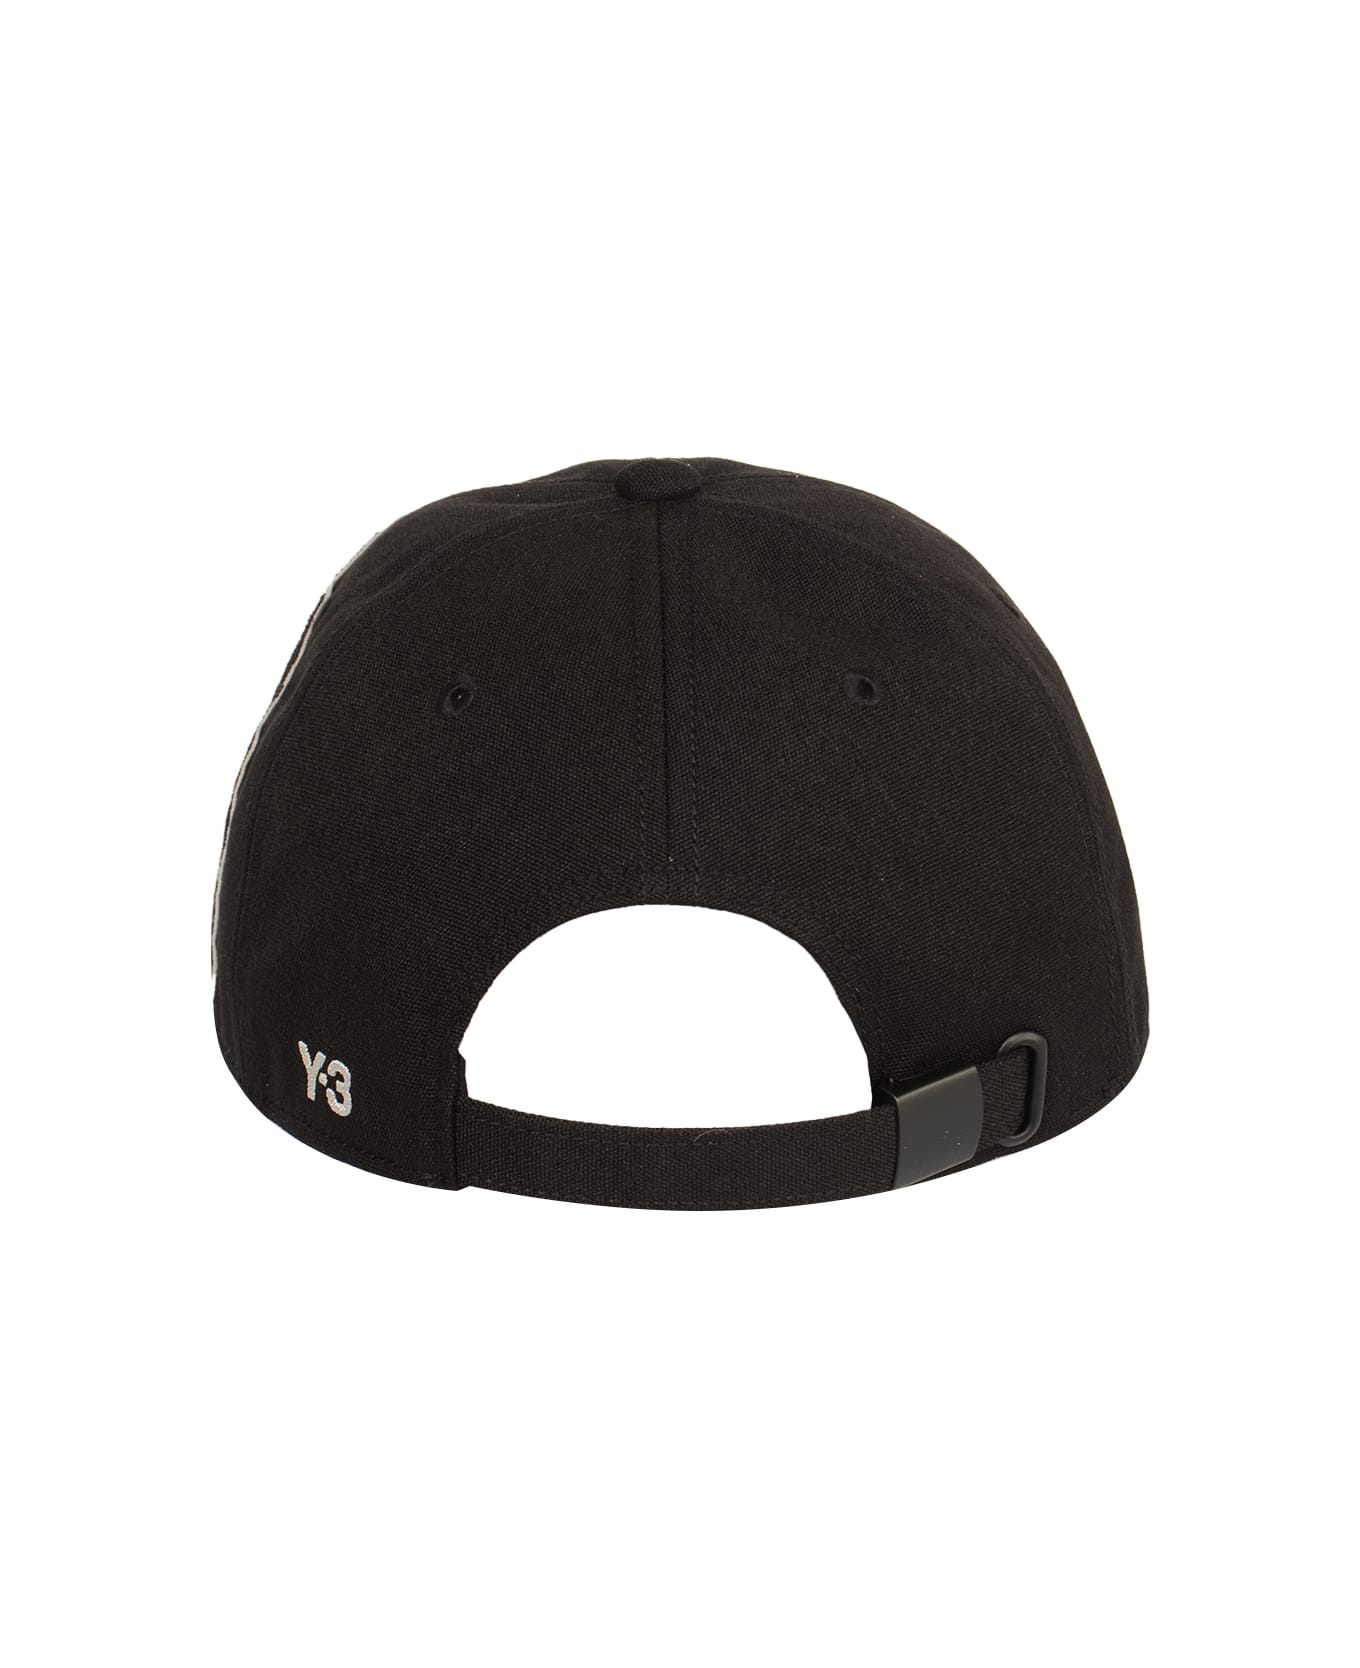 Y-3 Morphed Cap - Black 帽子